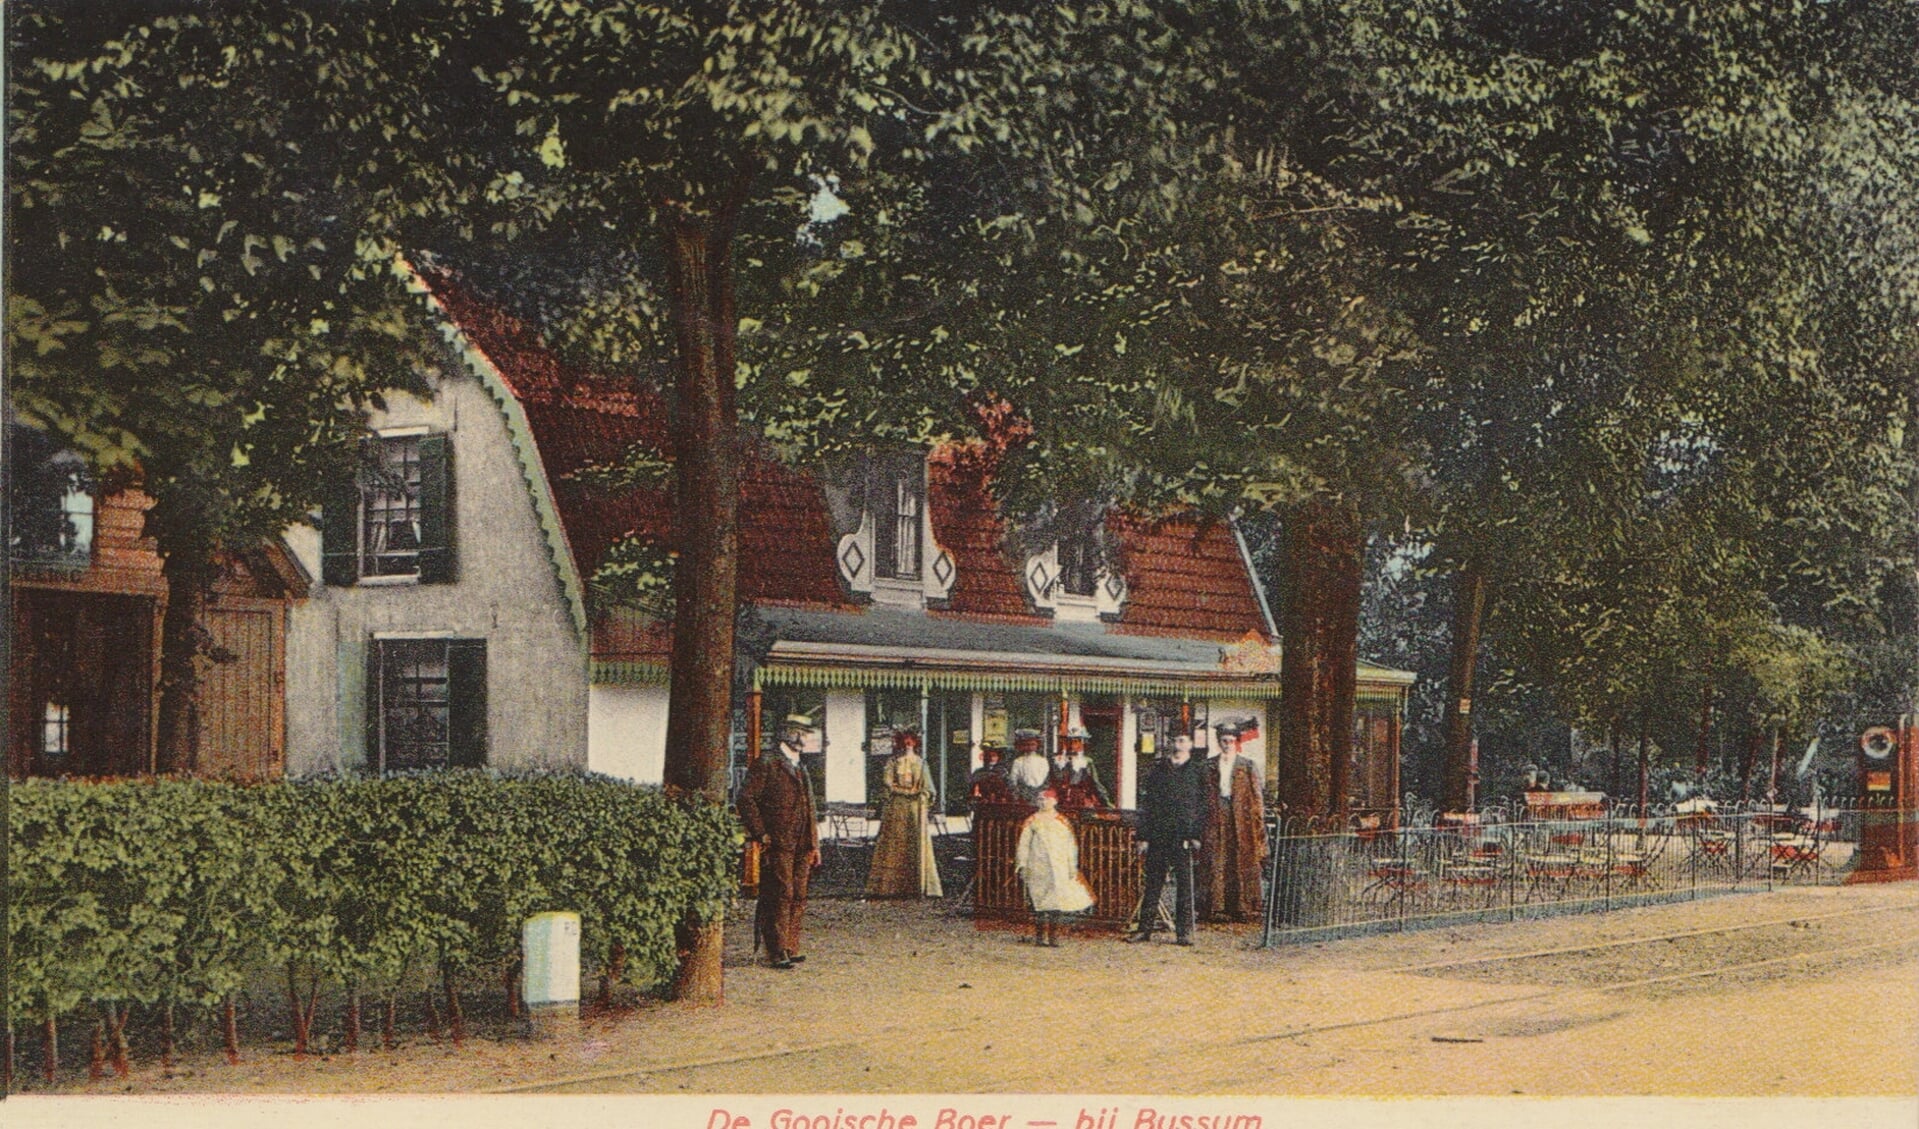 De Gooische Boer in 1905